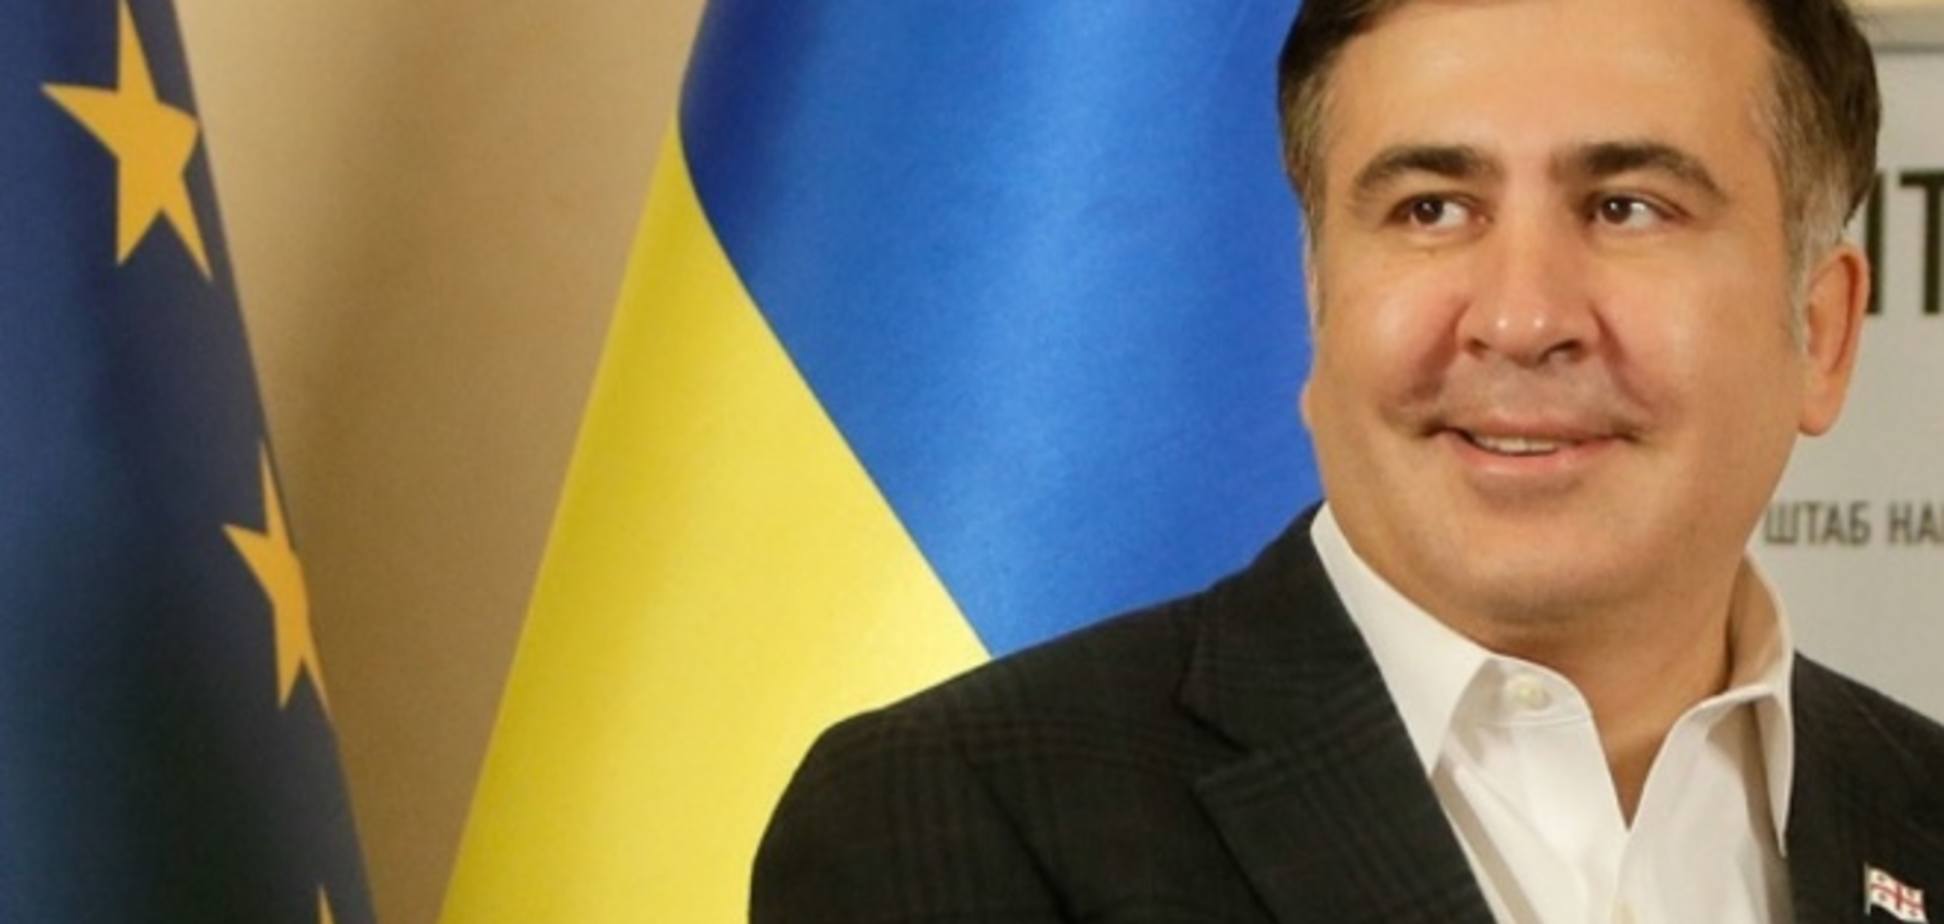 Грузией управляет главный частный акционер 'Газпрома' - Саакашвили об обвинении генпрокуратуры